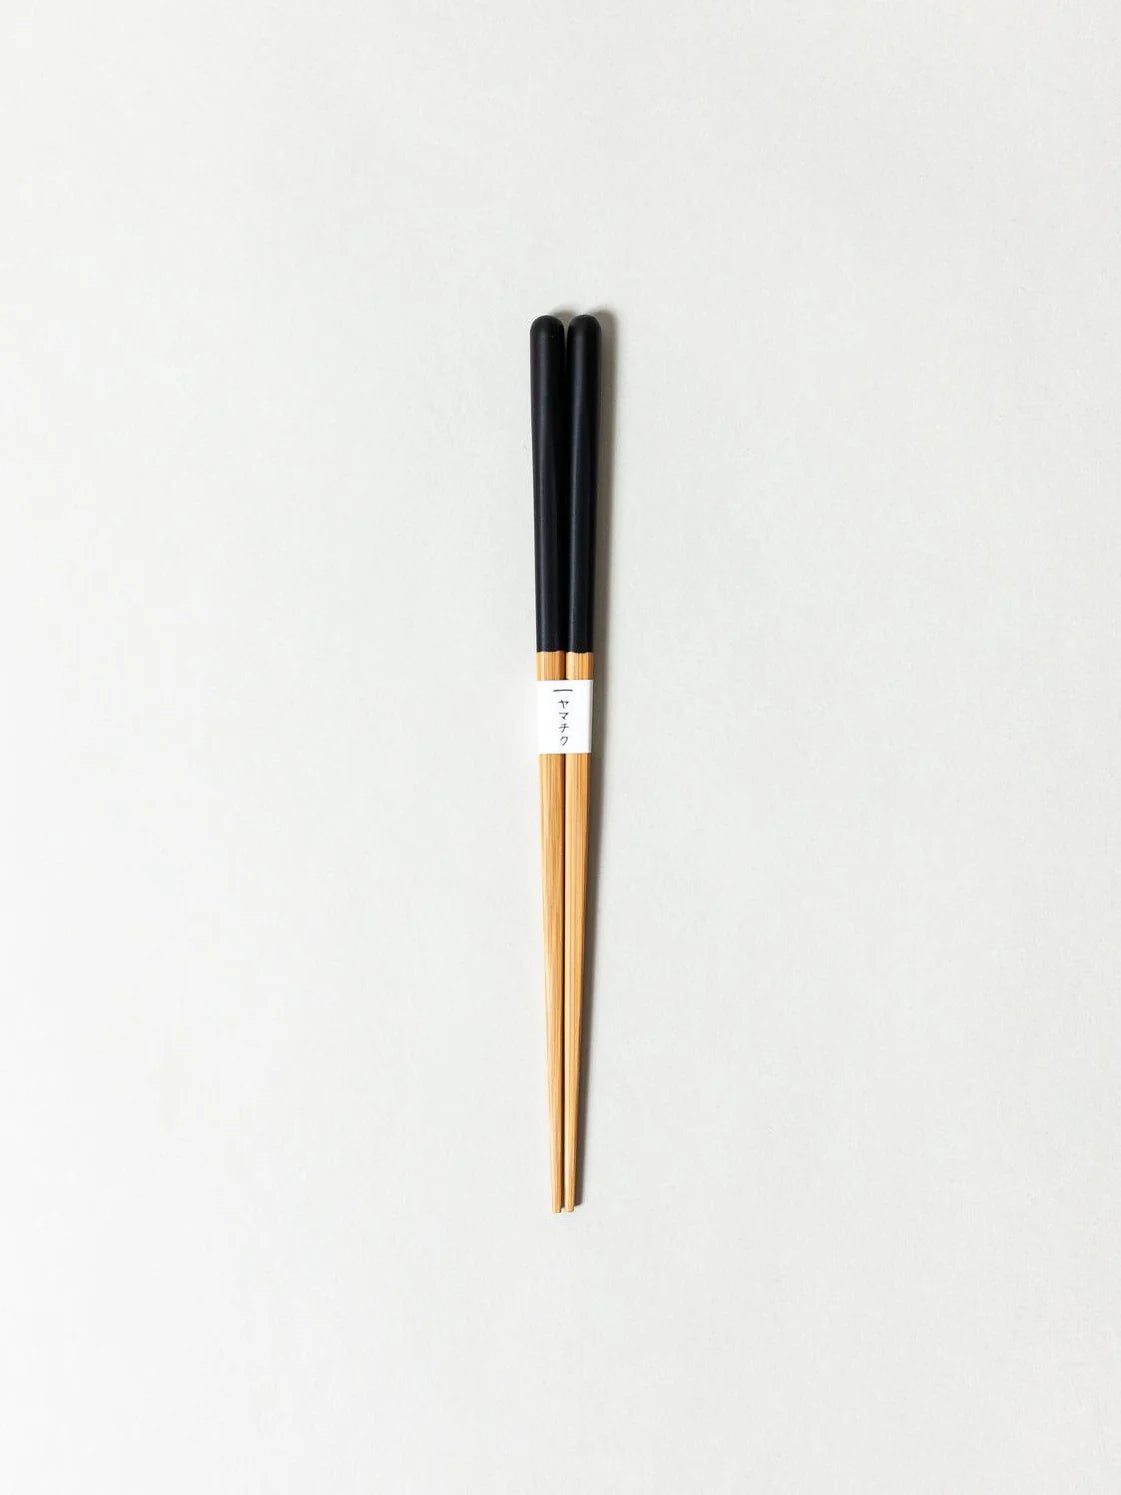 Susu Bamboo Chopsticks - BLACK